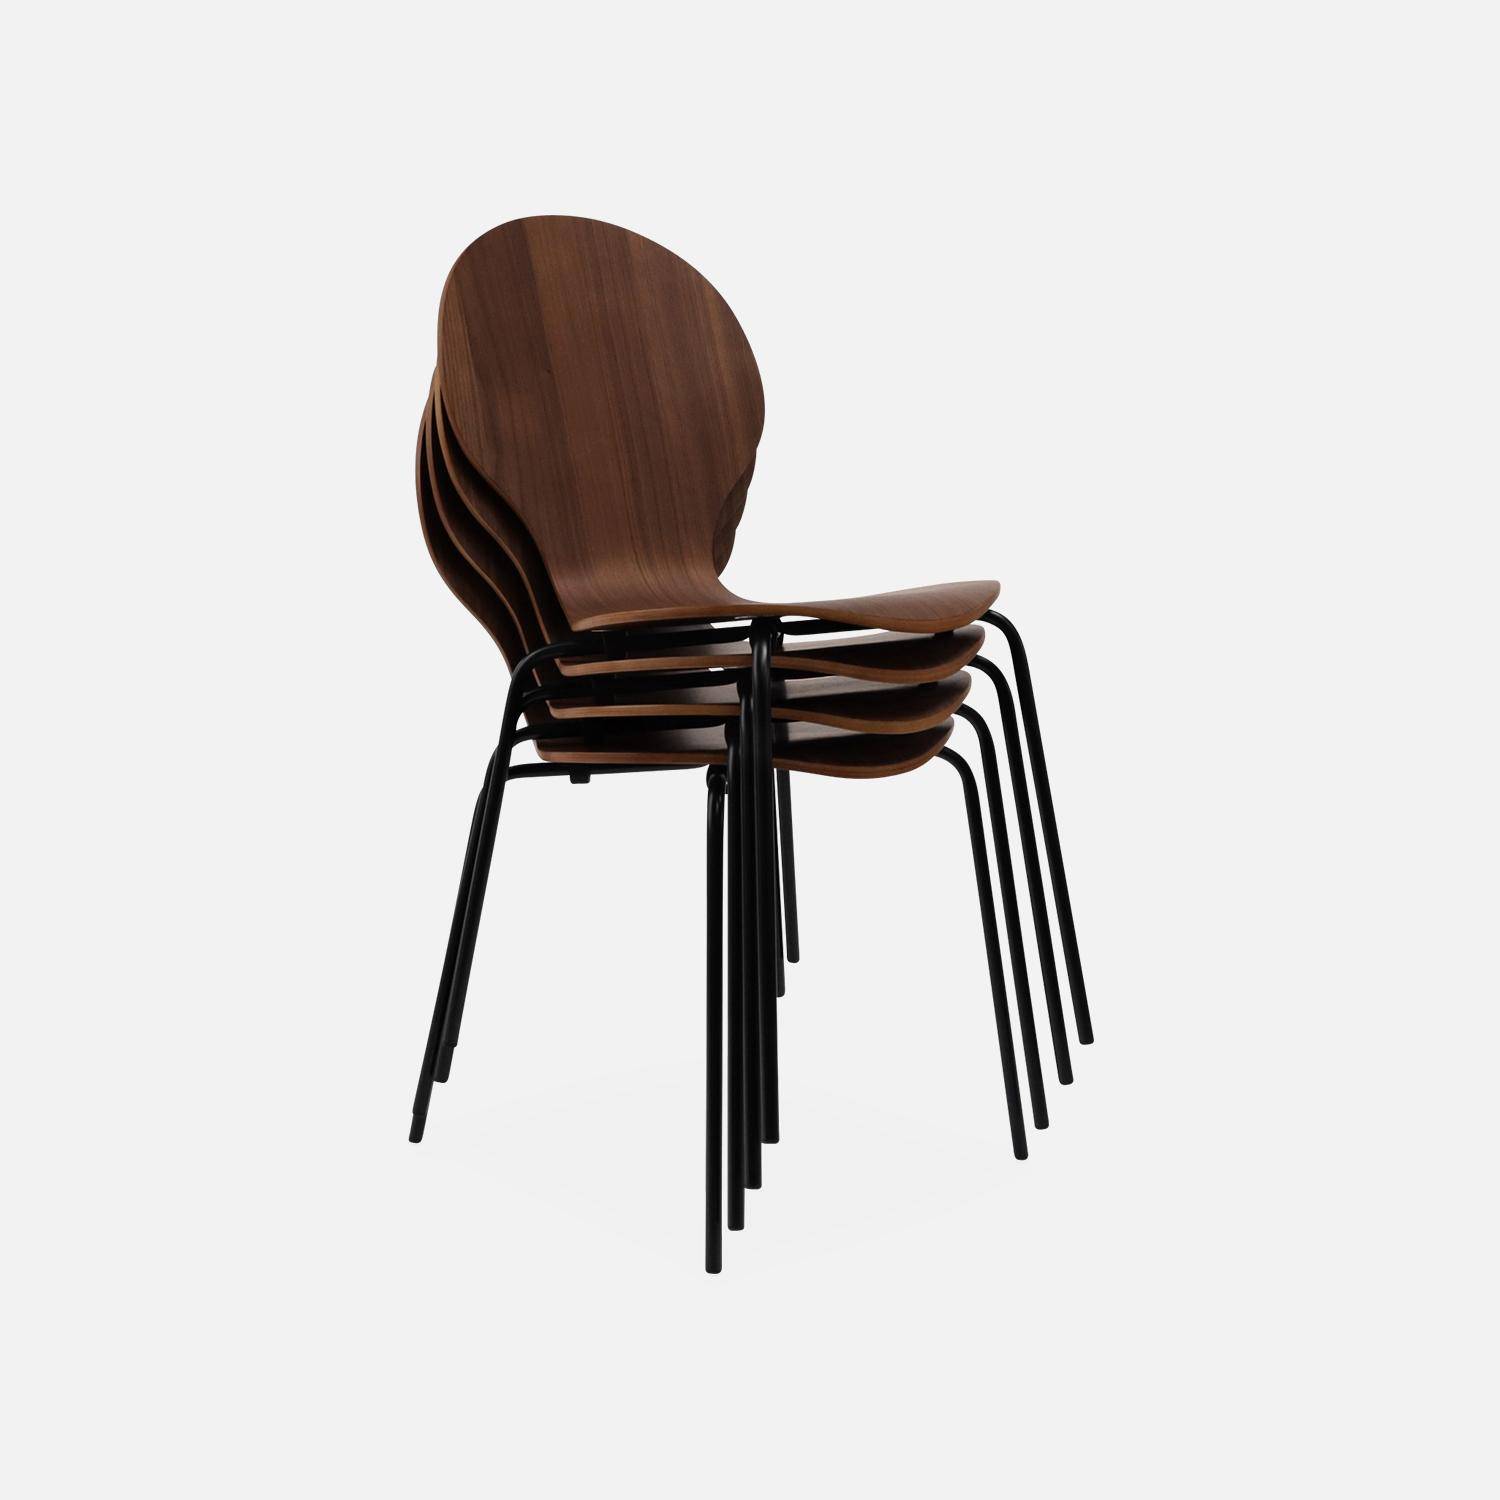 Set di 4 sedie legno scuro retro impilabili, legno di hevea e compensato, gambe in acciaio, Naomi, L 43 x P 48 x H 87cm Photo6